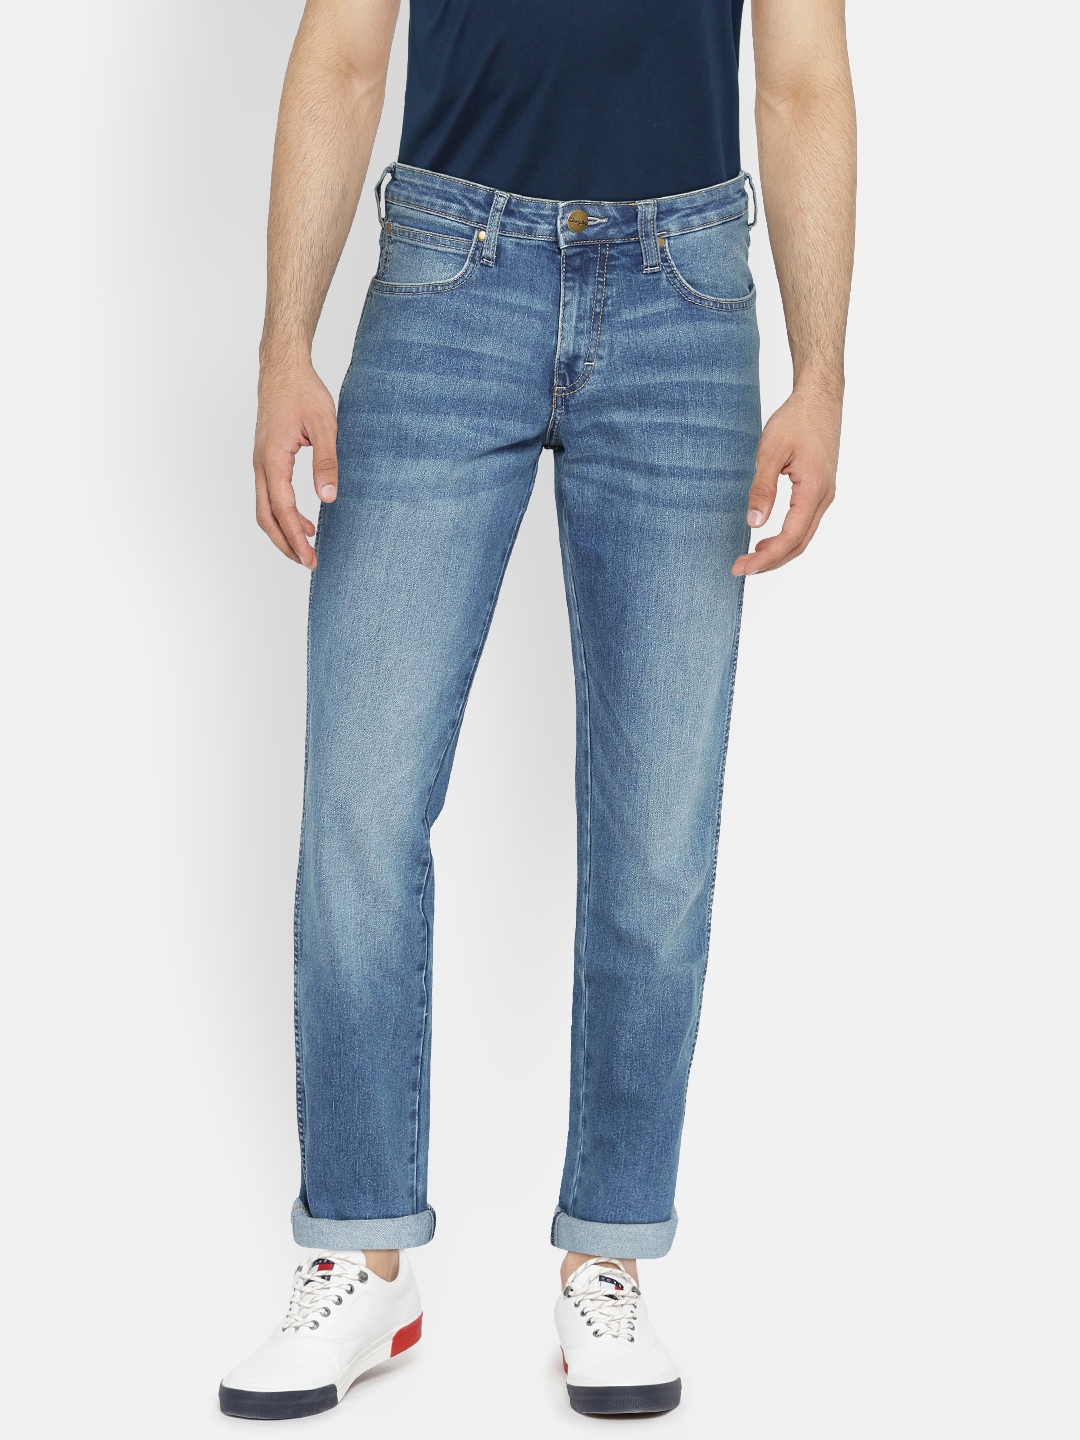 wrangler jeans millard fit